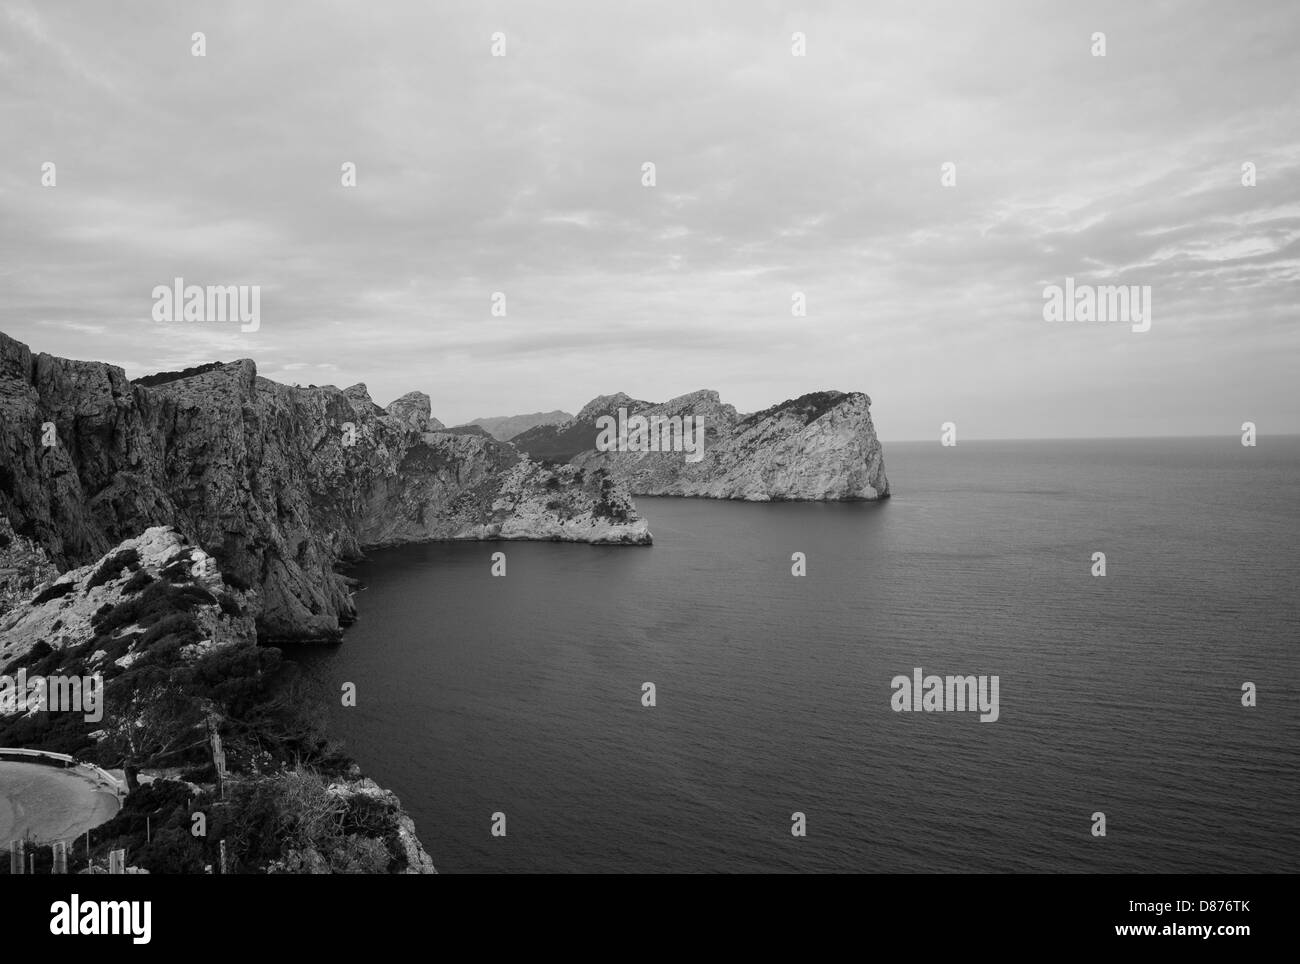 Isole Baleari Cap Formentor Mallorca Spagna in bianco e nero sulla laguna rocce di grandi dimensioni Foto Stock